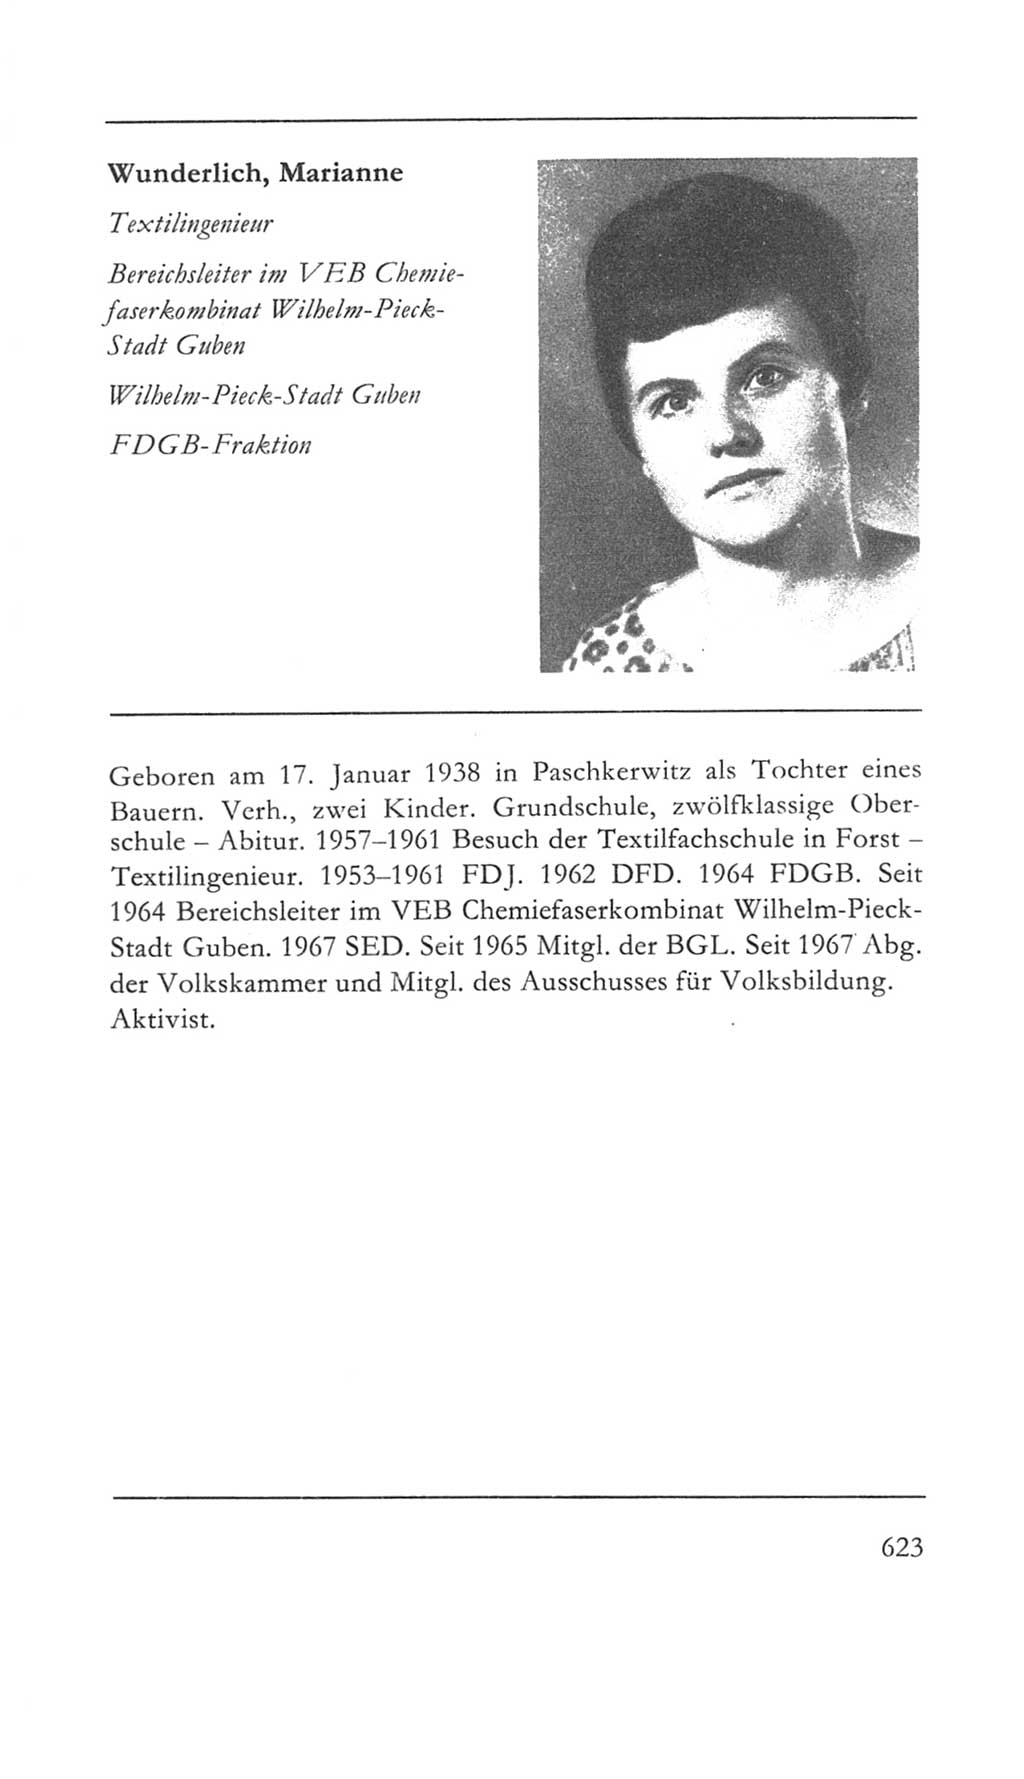 Volkskammer (VK) der Deutschen Demokratischen Republik (DDR) 5. Wahlperiode 1967-1971, Seite 623 (VK. DDR 5. WP. 1967-1971, S. 623)